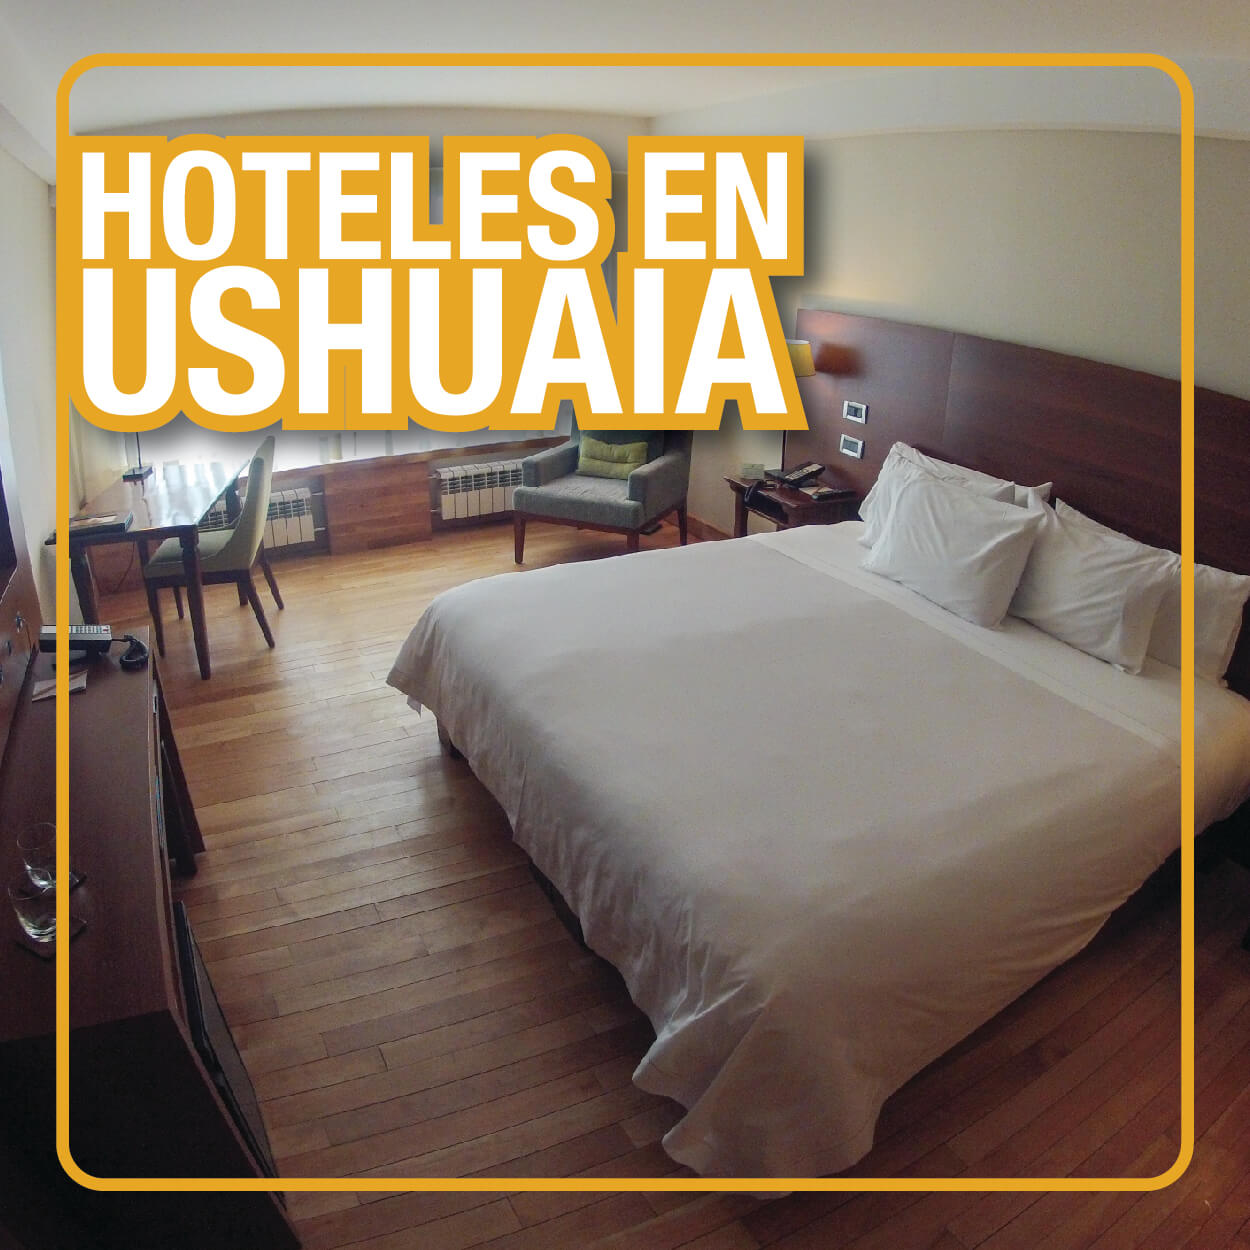 Hoteles en Ushuaia